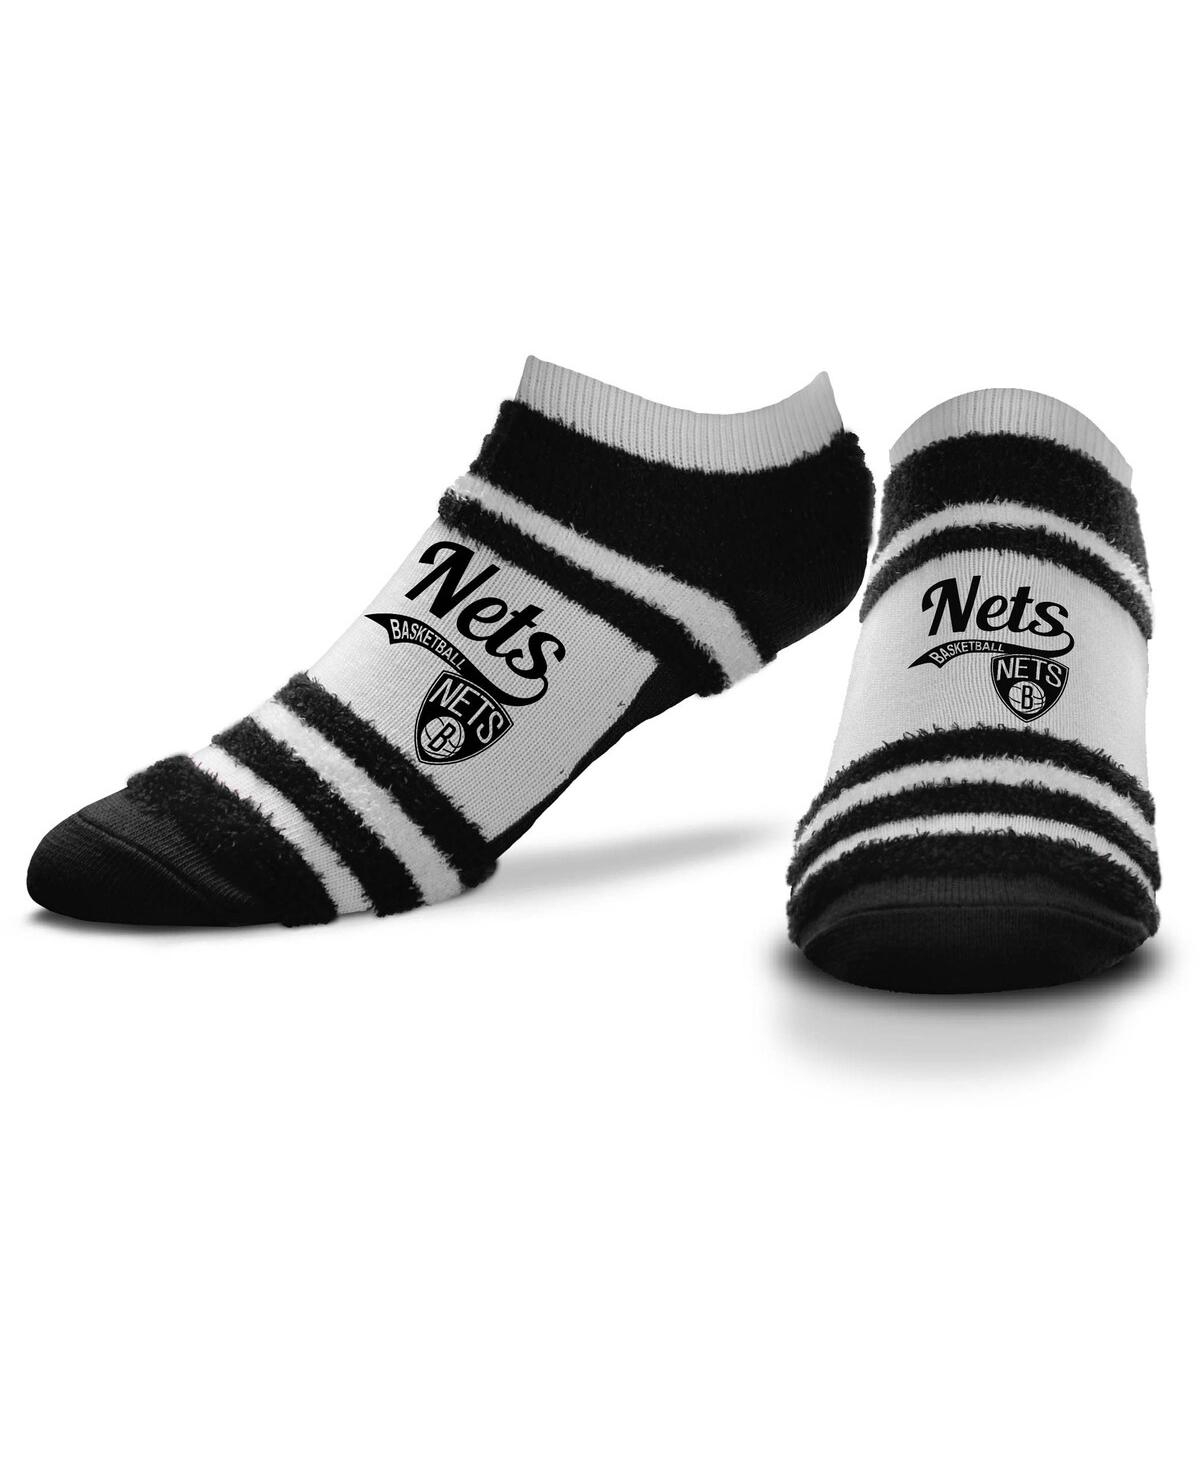 Women's For Bare Feet Brooklyn Nets Block Stripe Fuzzy Ankle Socks - Black